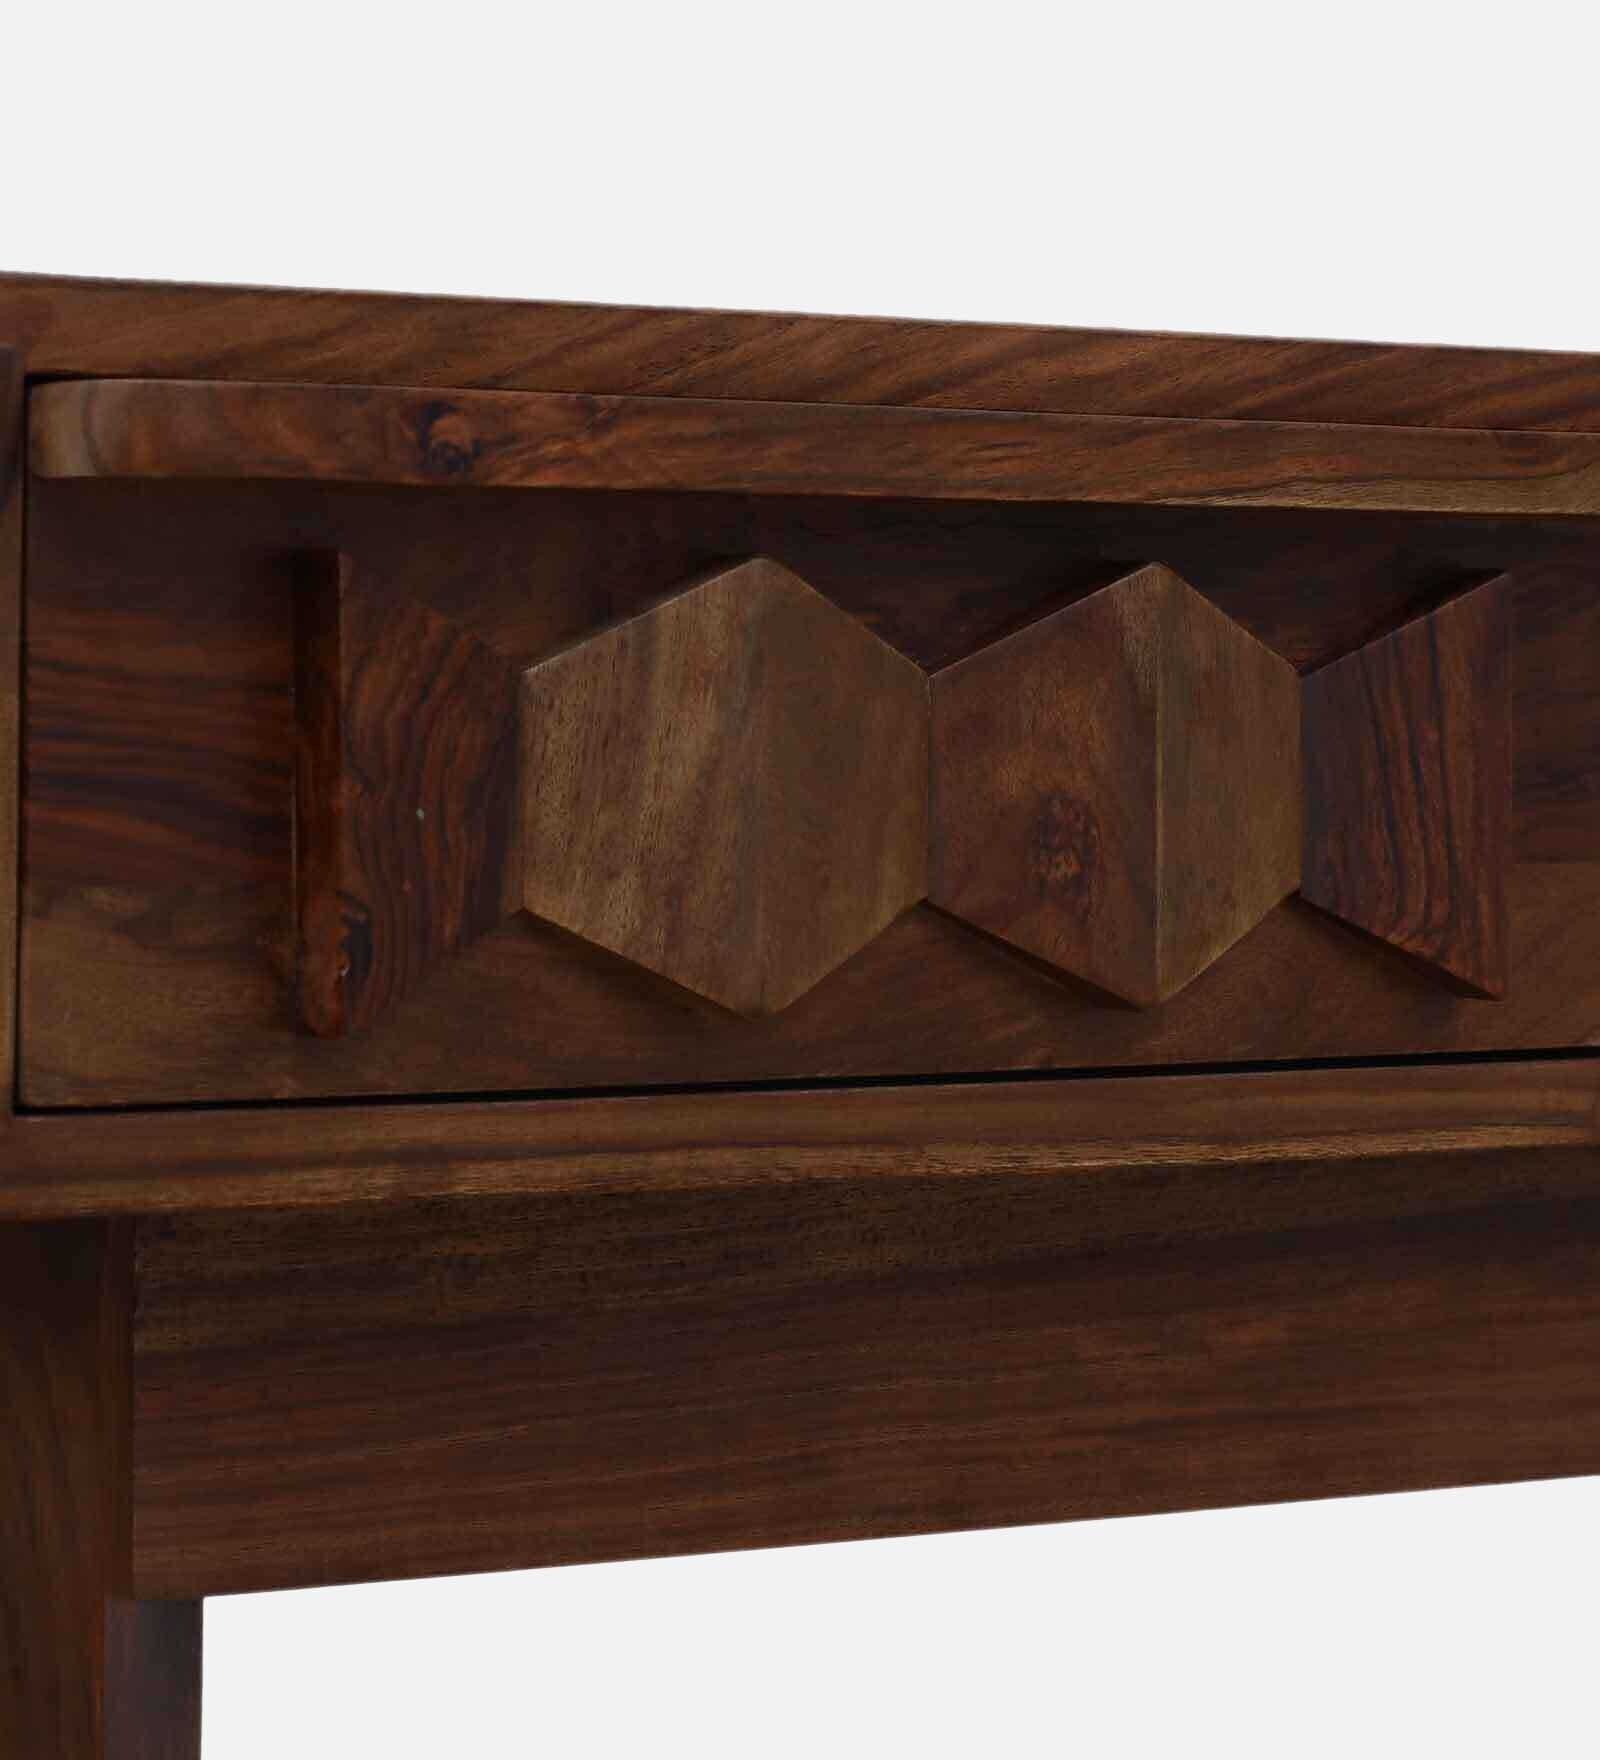 Alford Solid Wood Writing Table With 2 Drawer 1 Shelf in Provincial Teak Finish by Rajwada - Rajwada Furnish